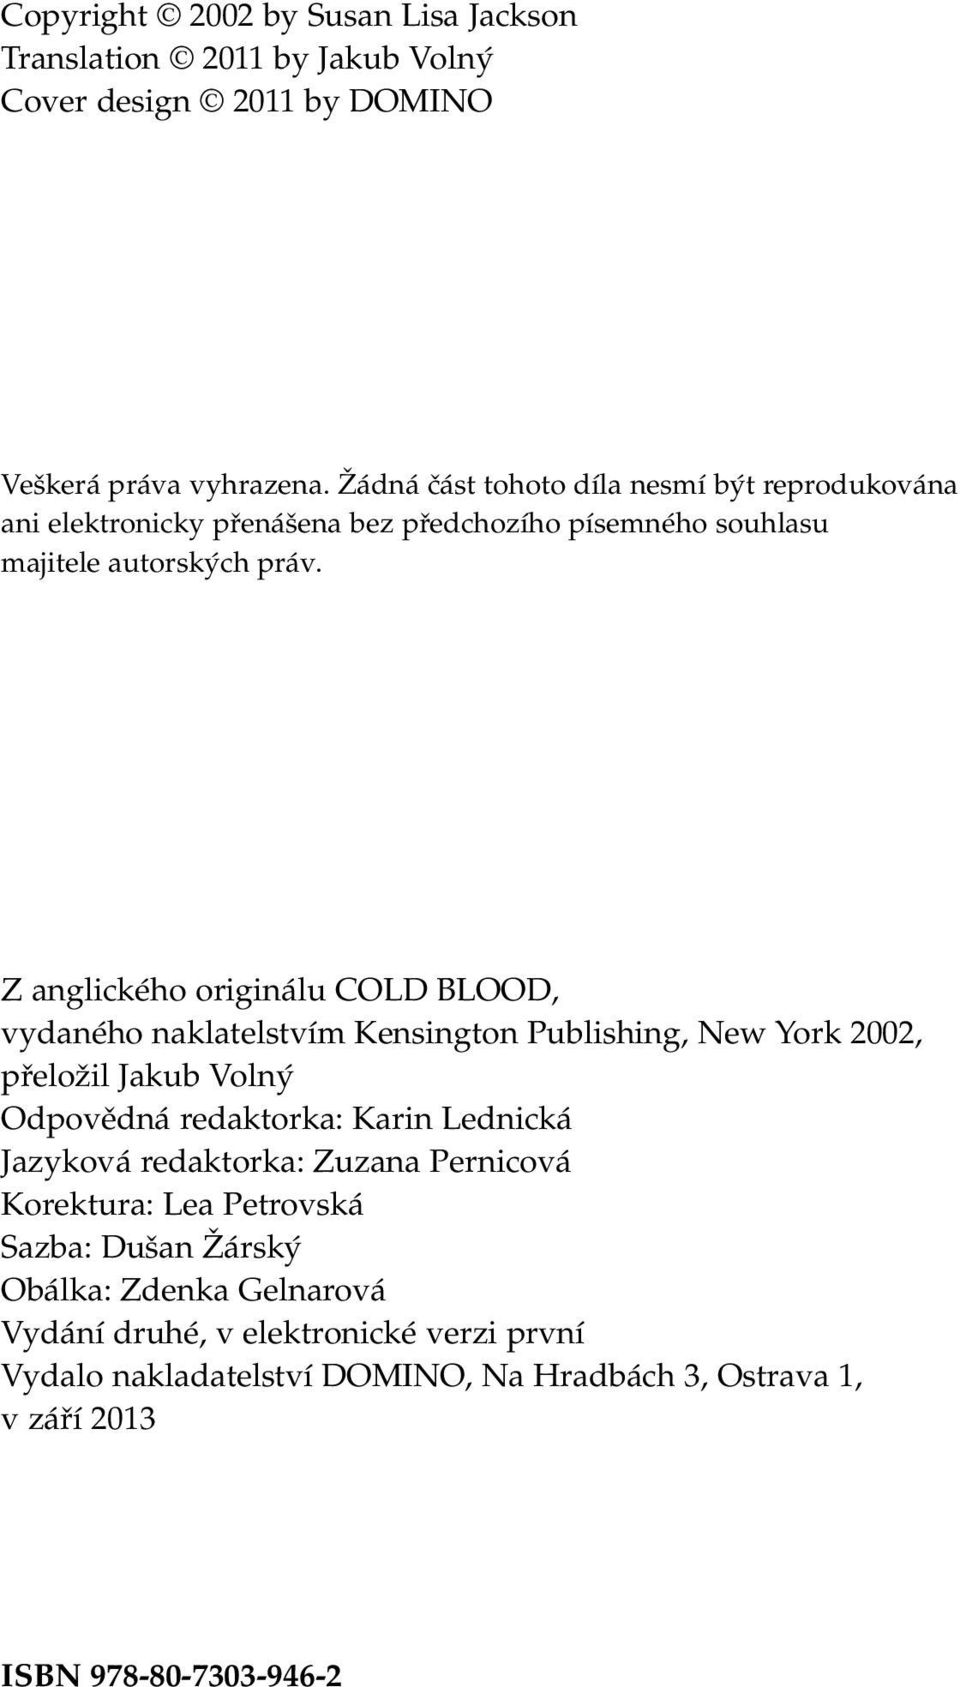 Z anglického originálu COLD BLOOD, vydaného naklatelstvím Kensington Publishing, New York 2002, přeložil Jakub Volný Odpovědná redaktorka: Karin Lednická Jazyková